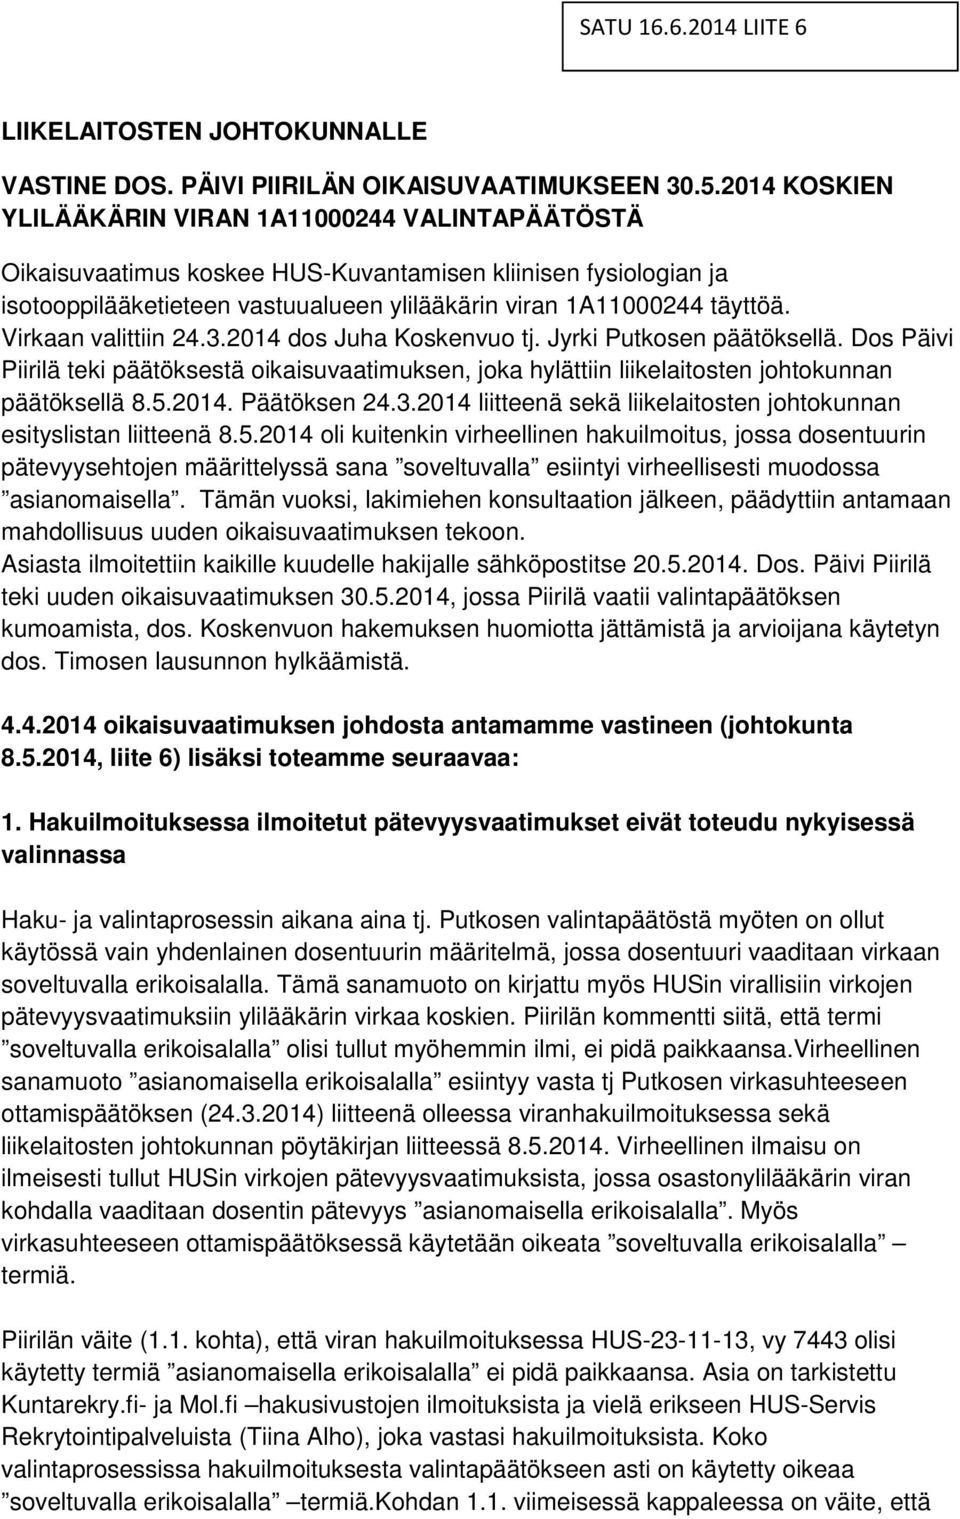 Virkaan valittiin 24.3.2014 dos Juha Koskenvuo tj. Jyrki Putkosen päätöksellä. Dos Päivi Piirilä teki päätöksestä oikaisuvaatimuksen, joka hylättiin liikelaitosten johtokunnan päätöksellä 8.5.2014. Päätöksen 24.